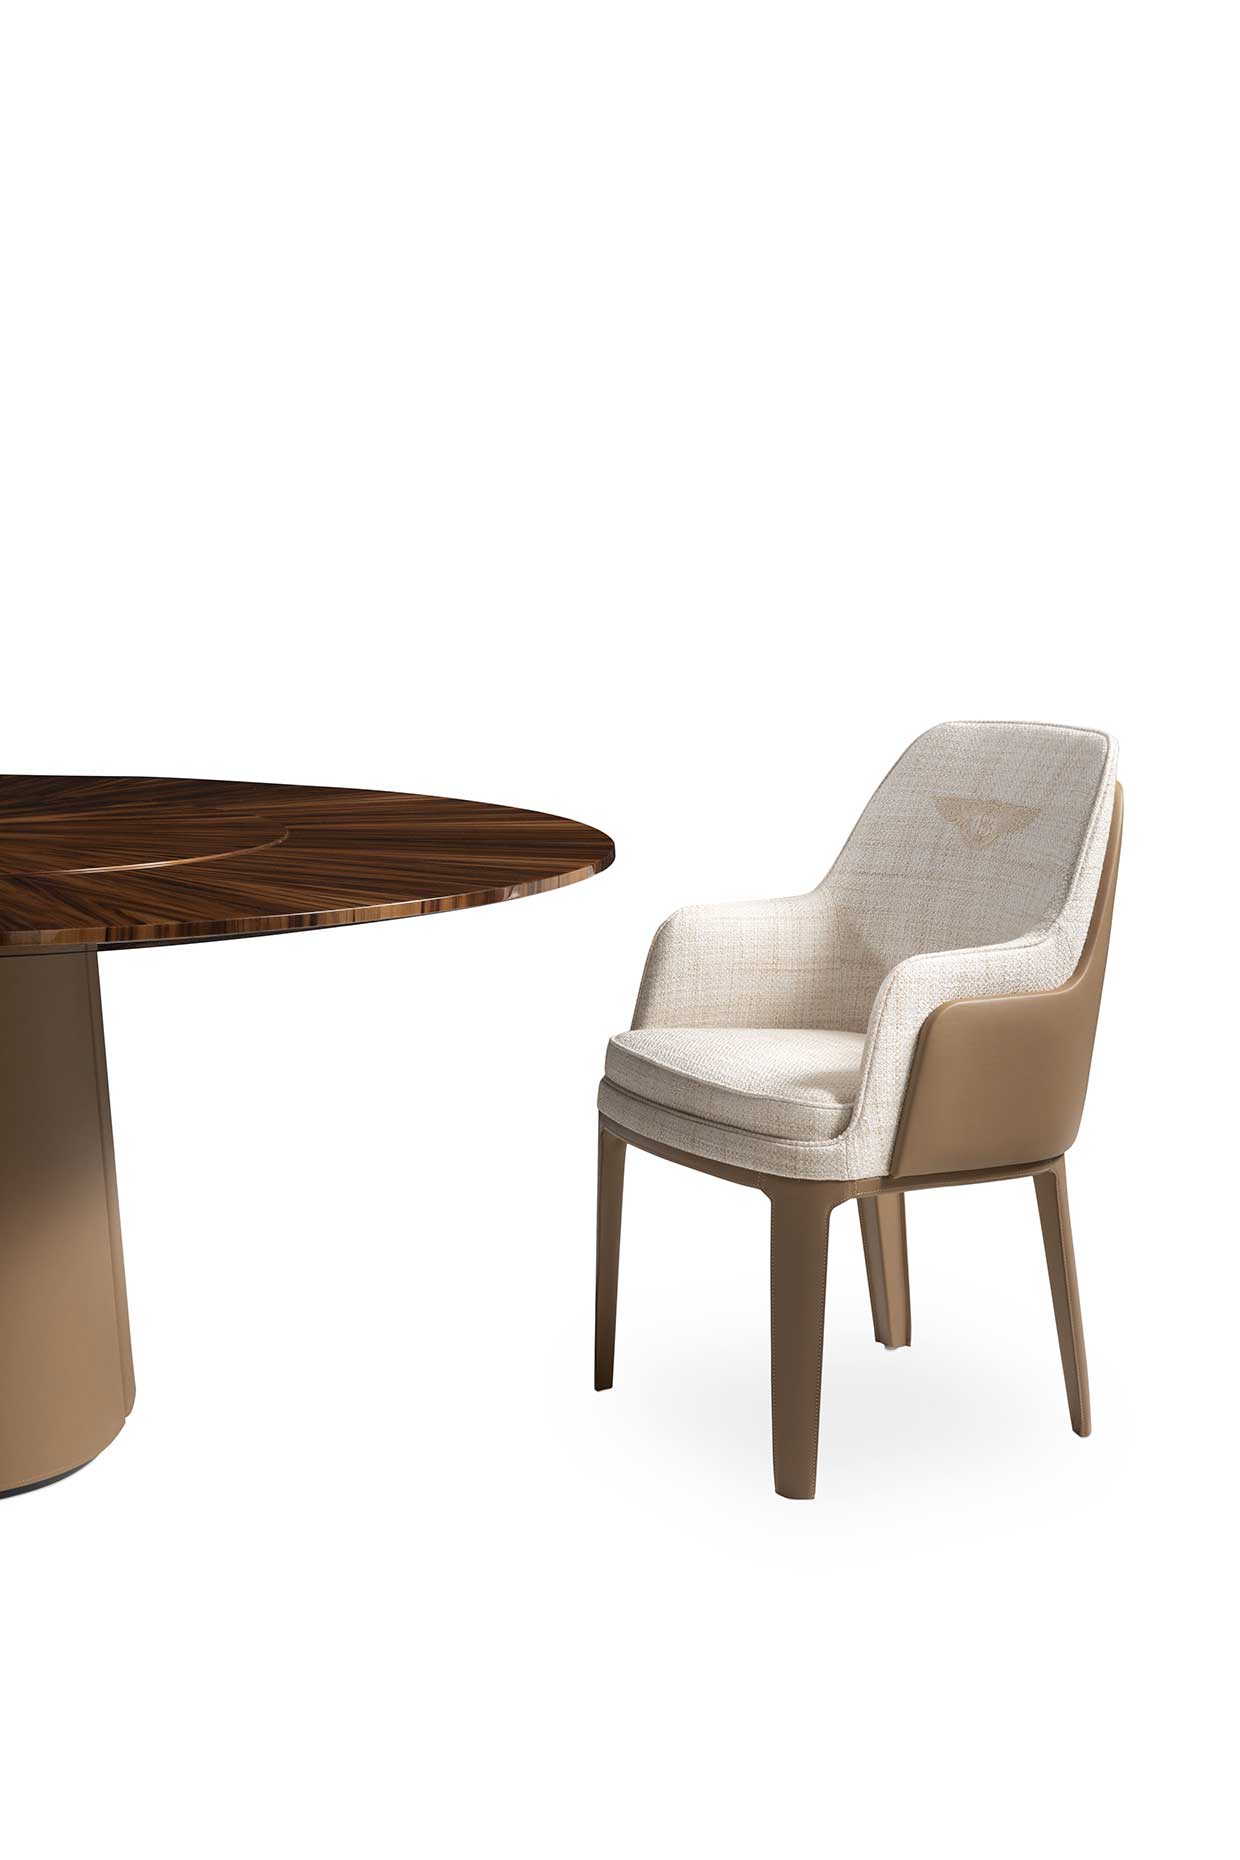 Стол обеденный WHITBY TABLE, дизайн Bentley Home